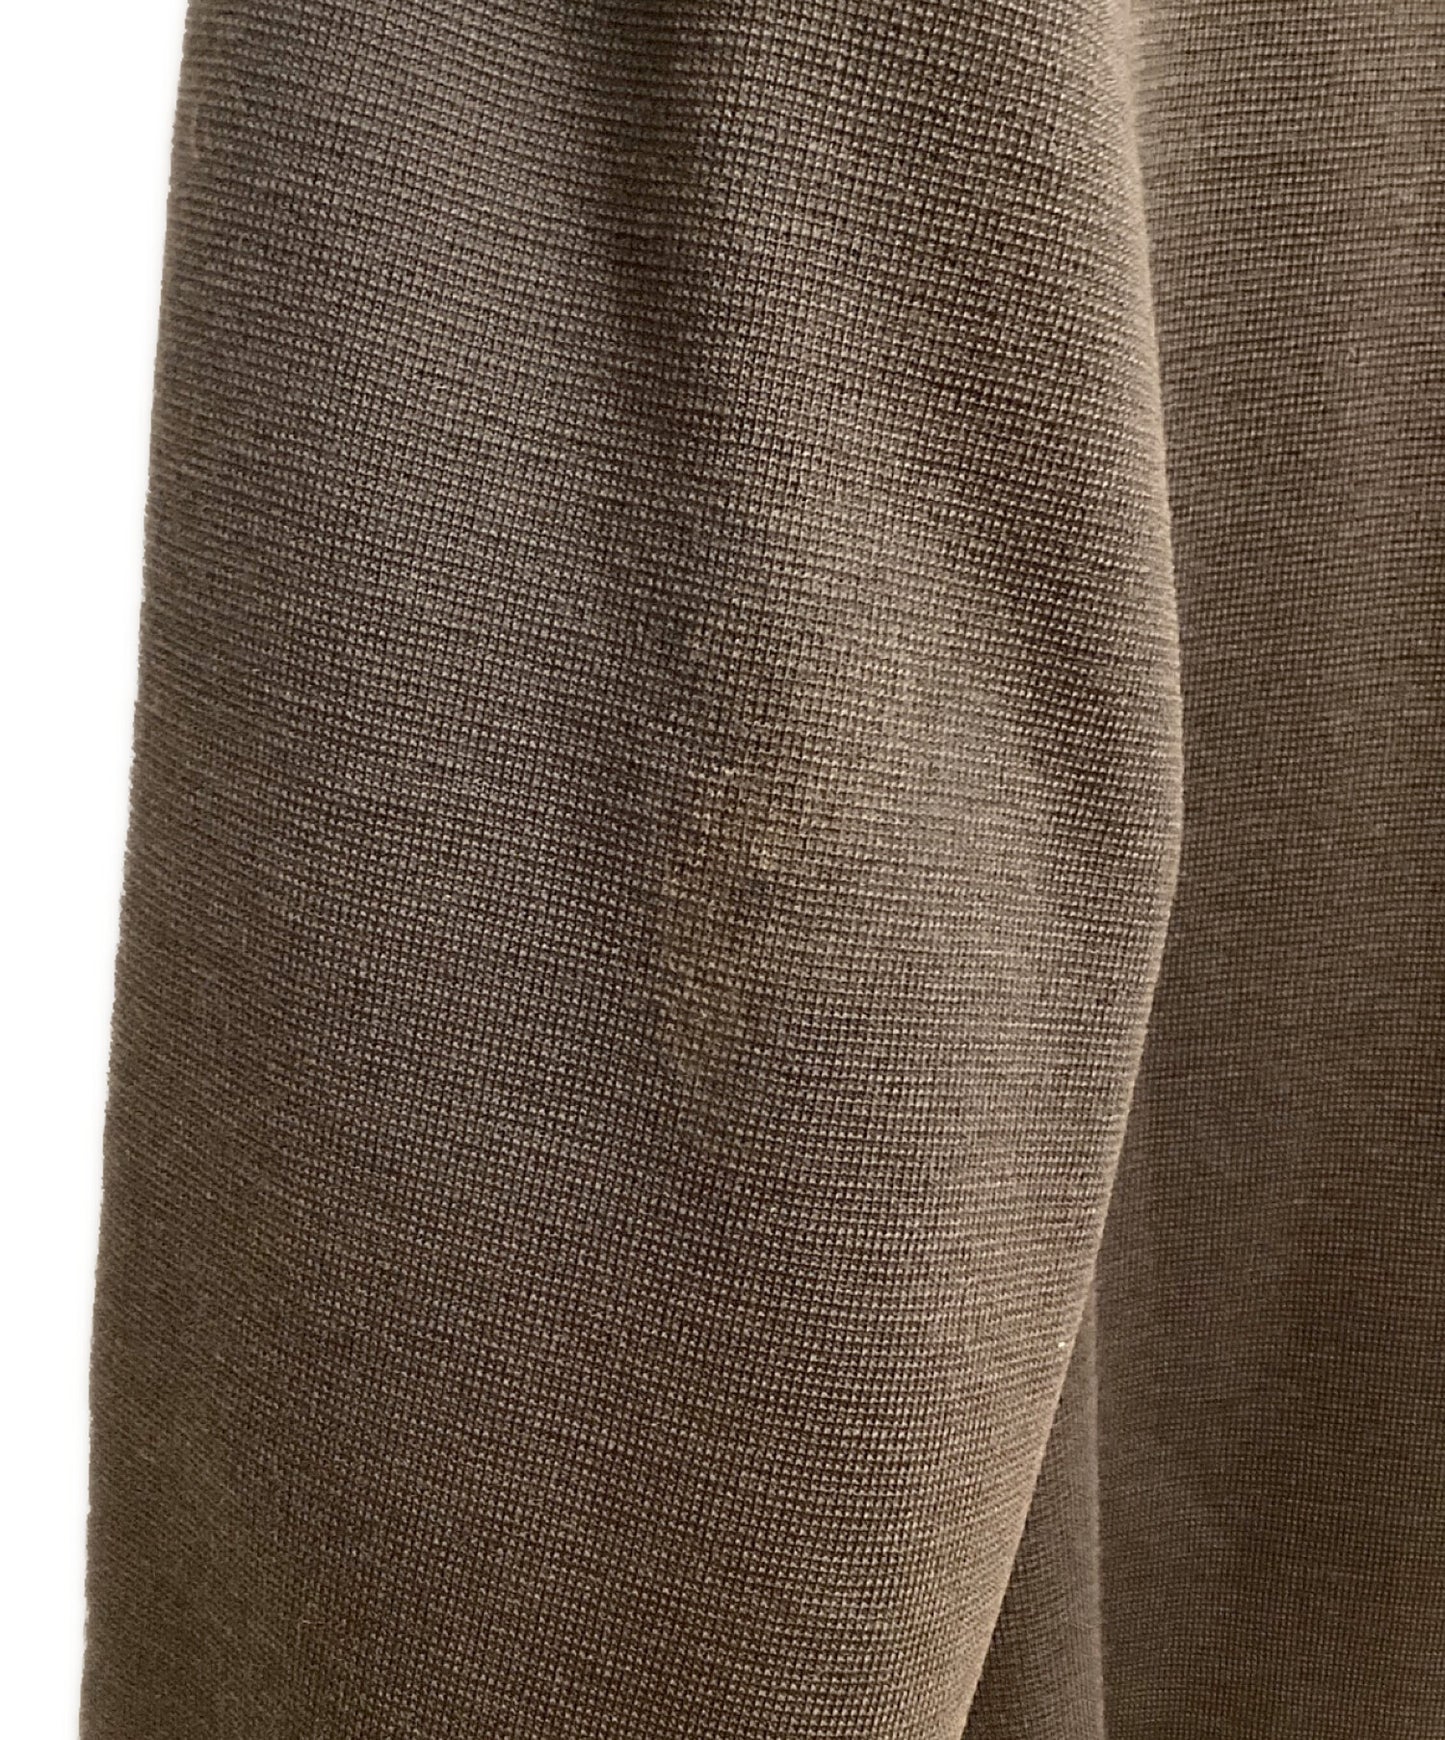 [Pre-owned] ISSEY MIYAKE Wool Long Cardigan ME13KD014